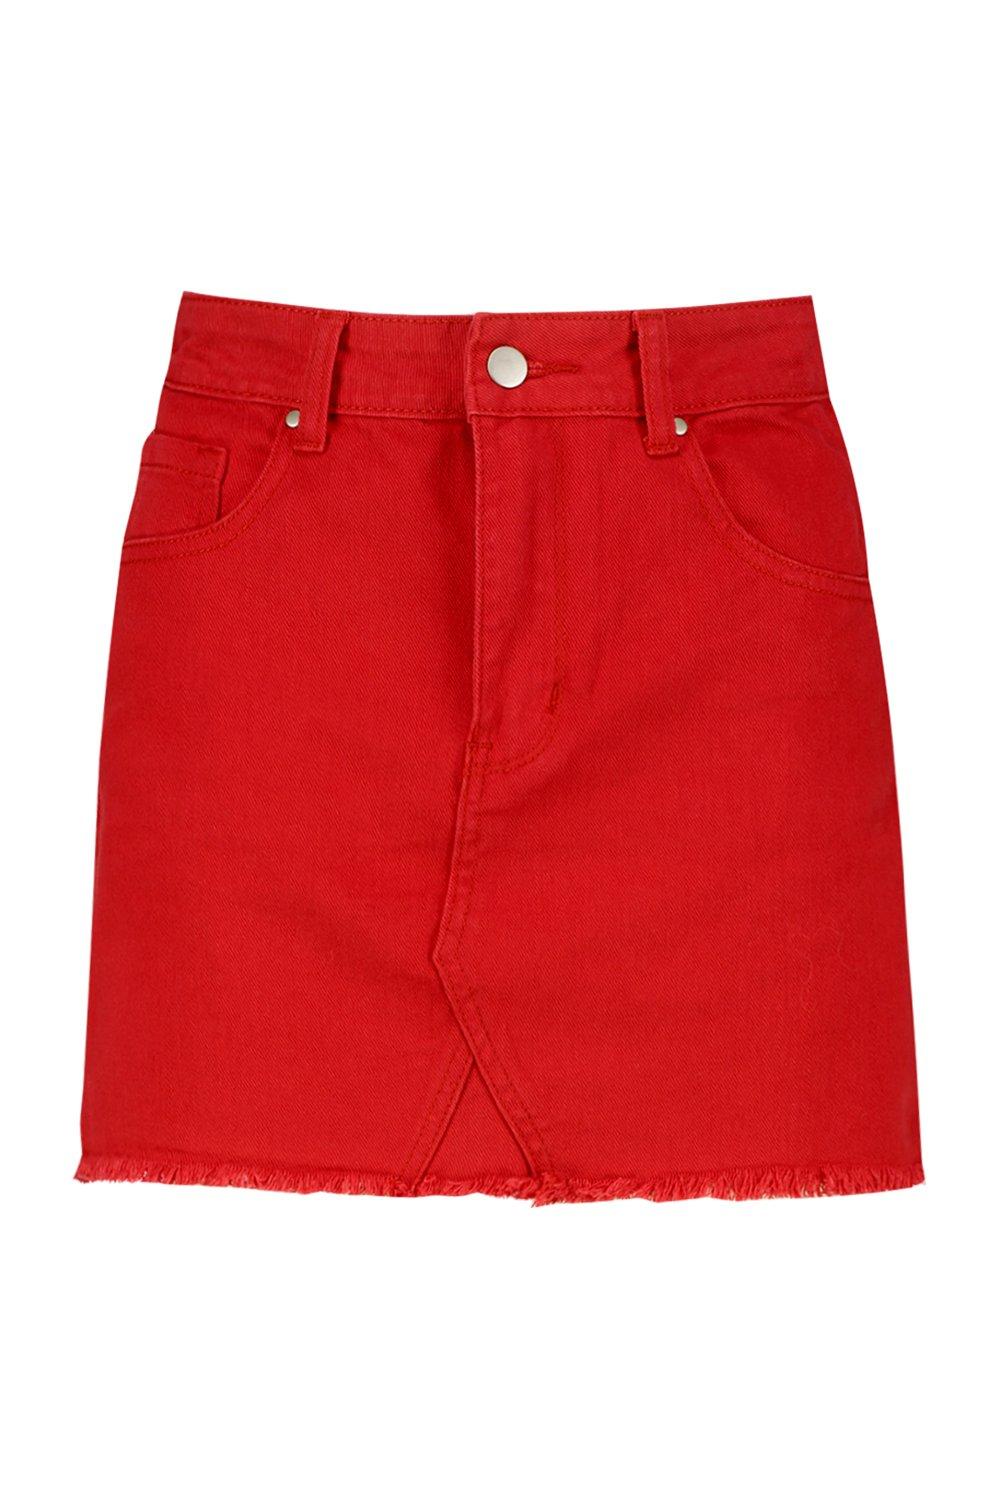 maroon jean skirt